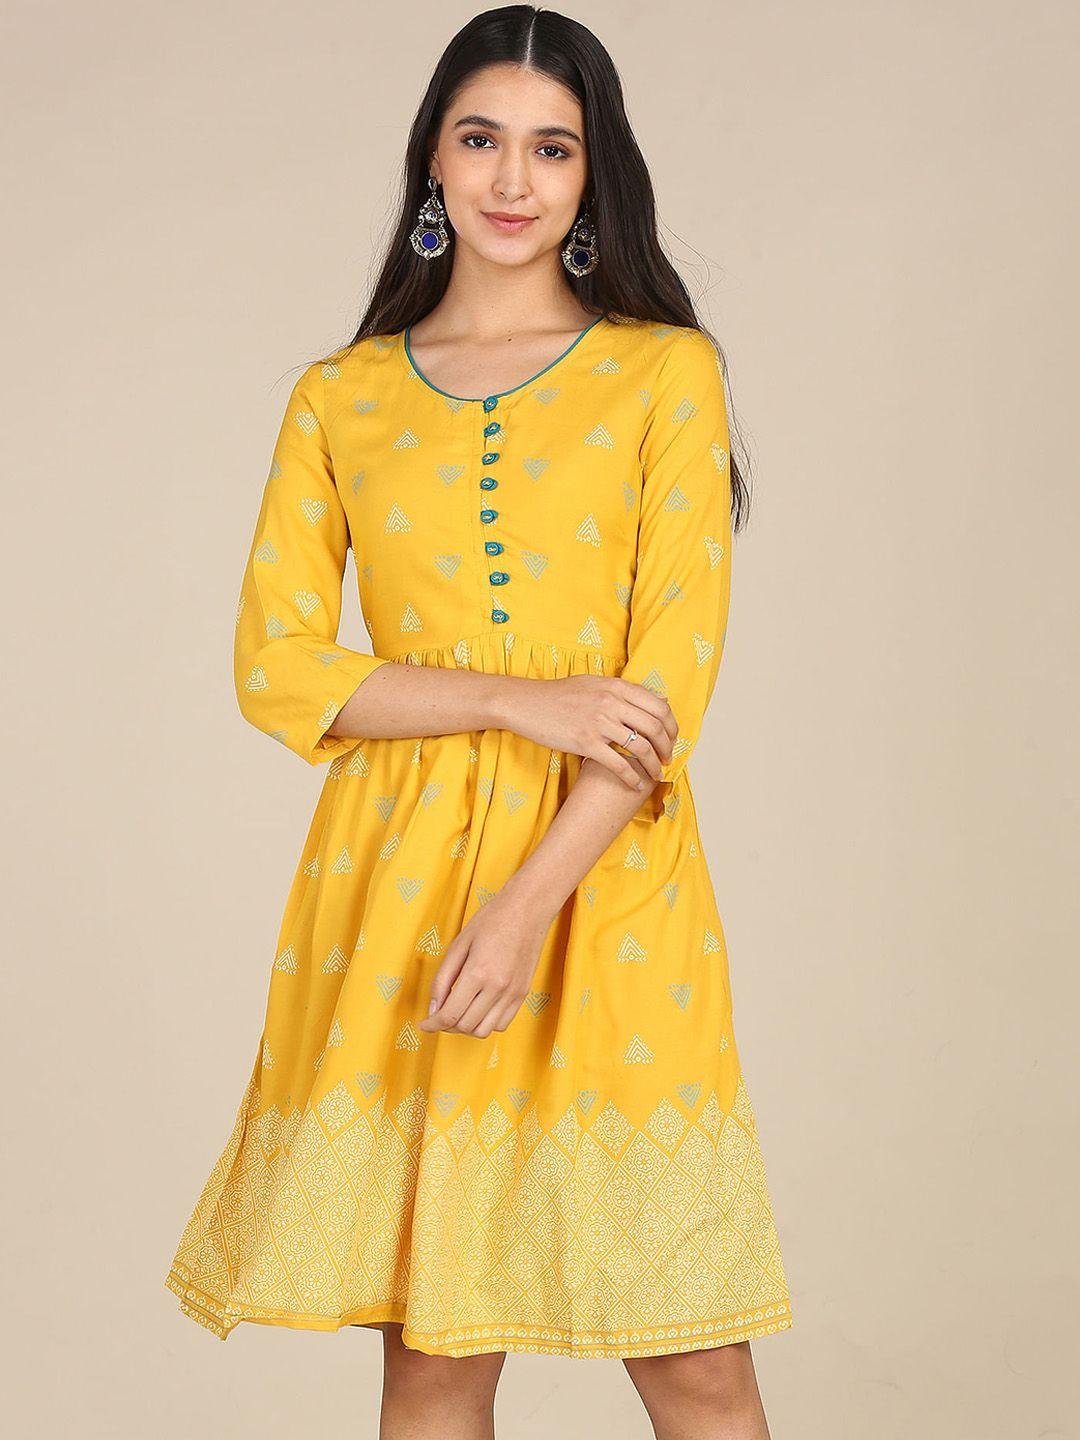 karigari yellow dress